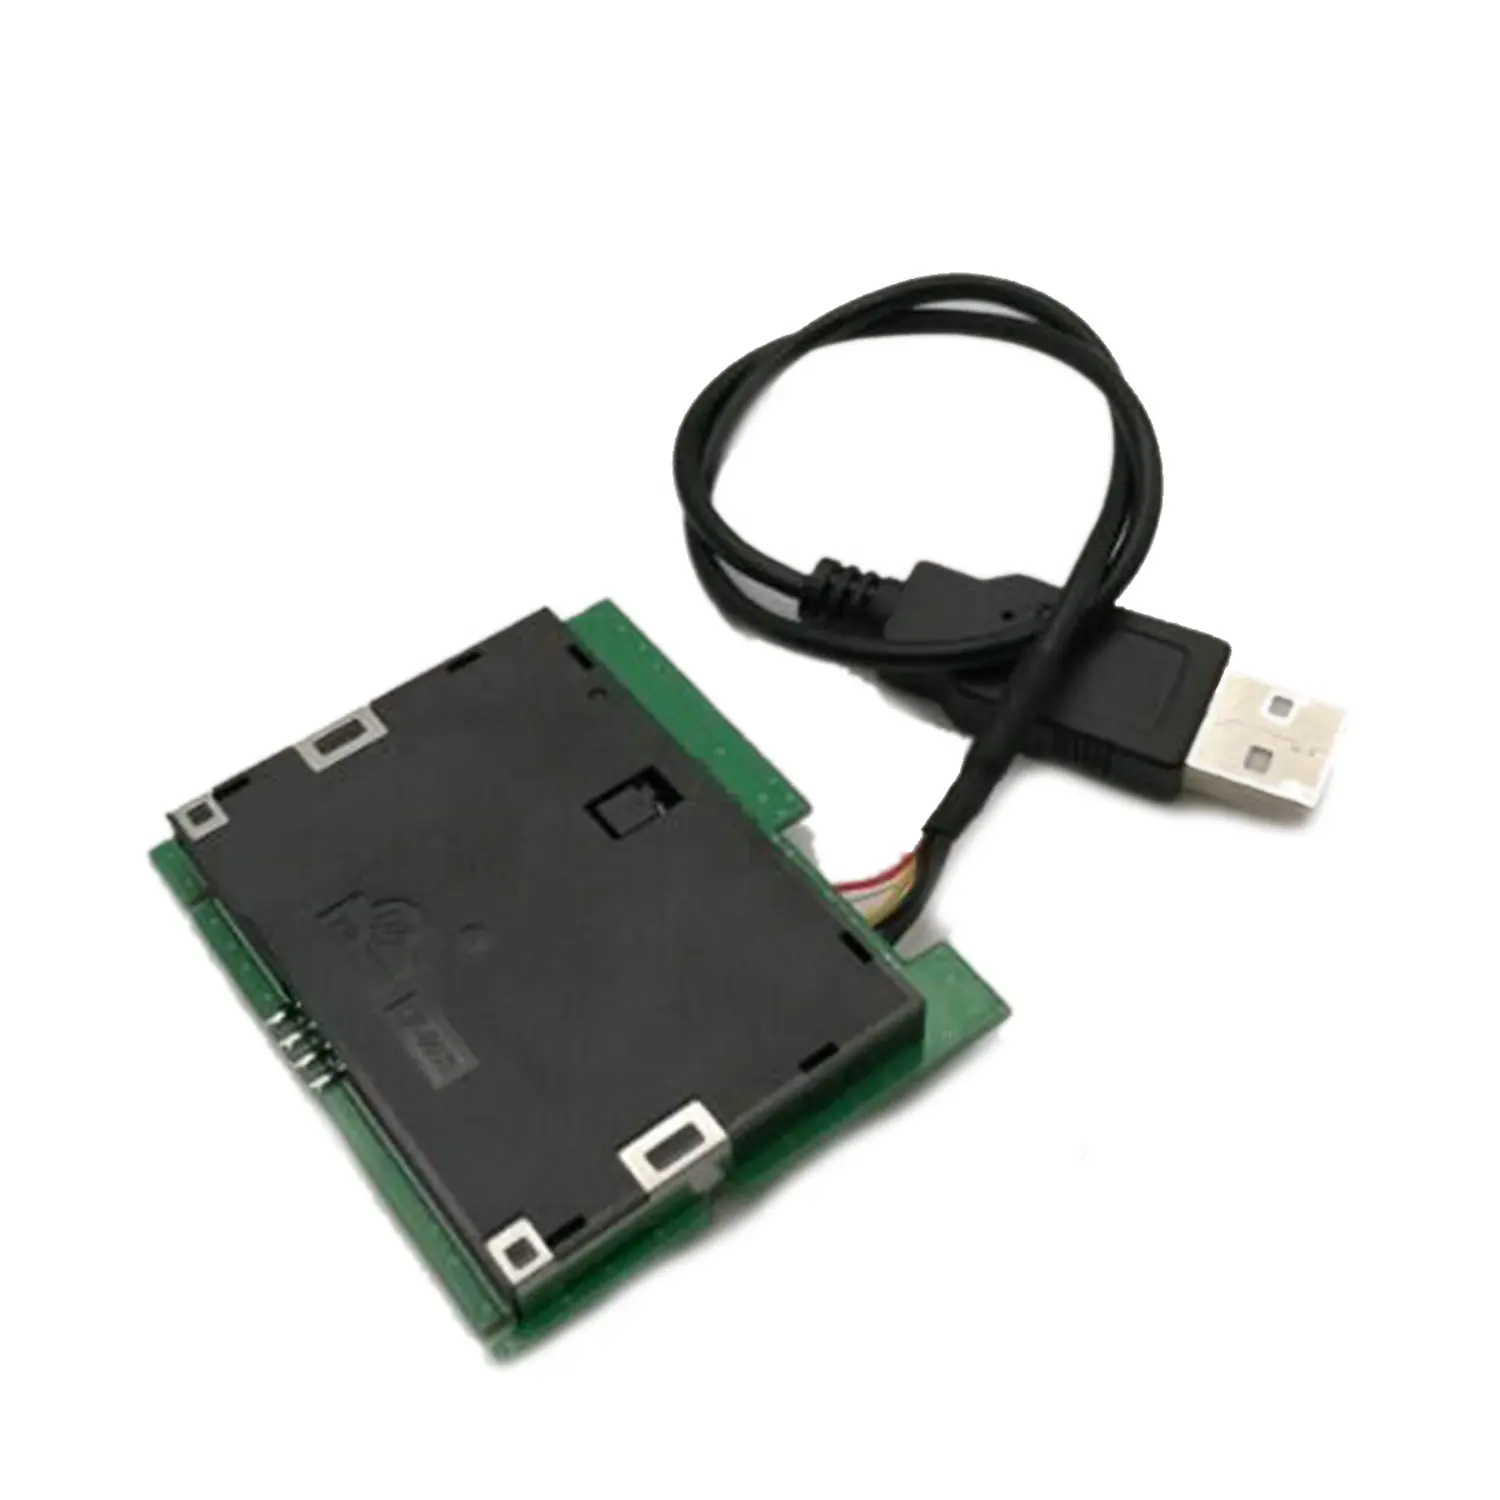 ISO-7816 USB disket IC çip akıllı kart okuyucu modülü ile ücretsiz SDK MCR3521-M